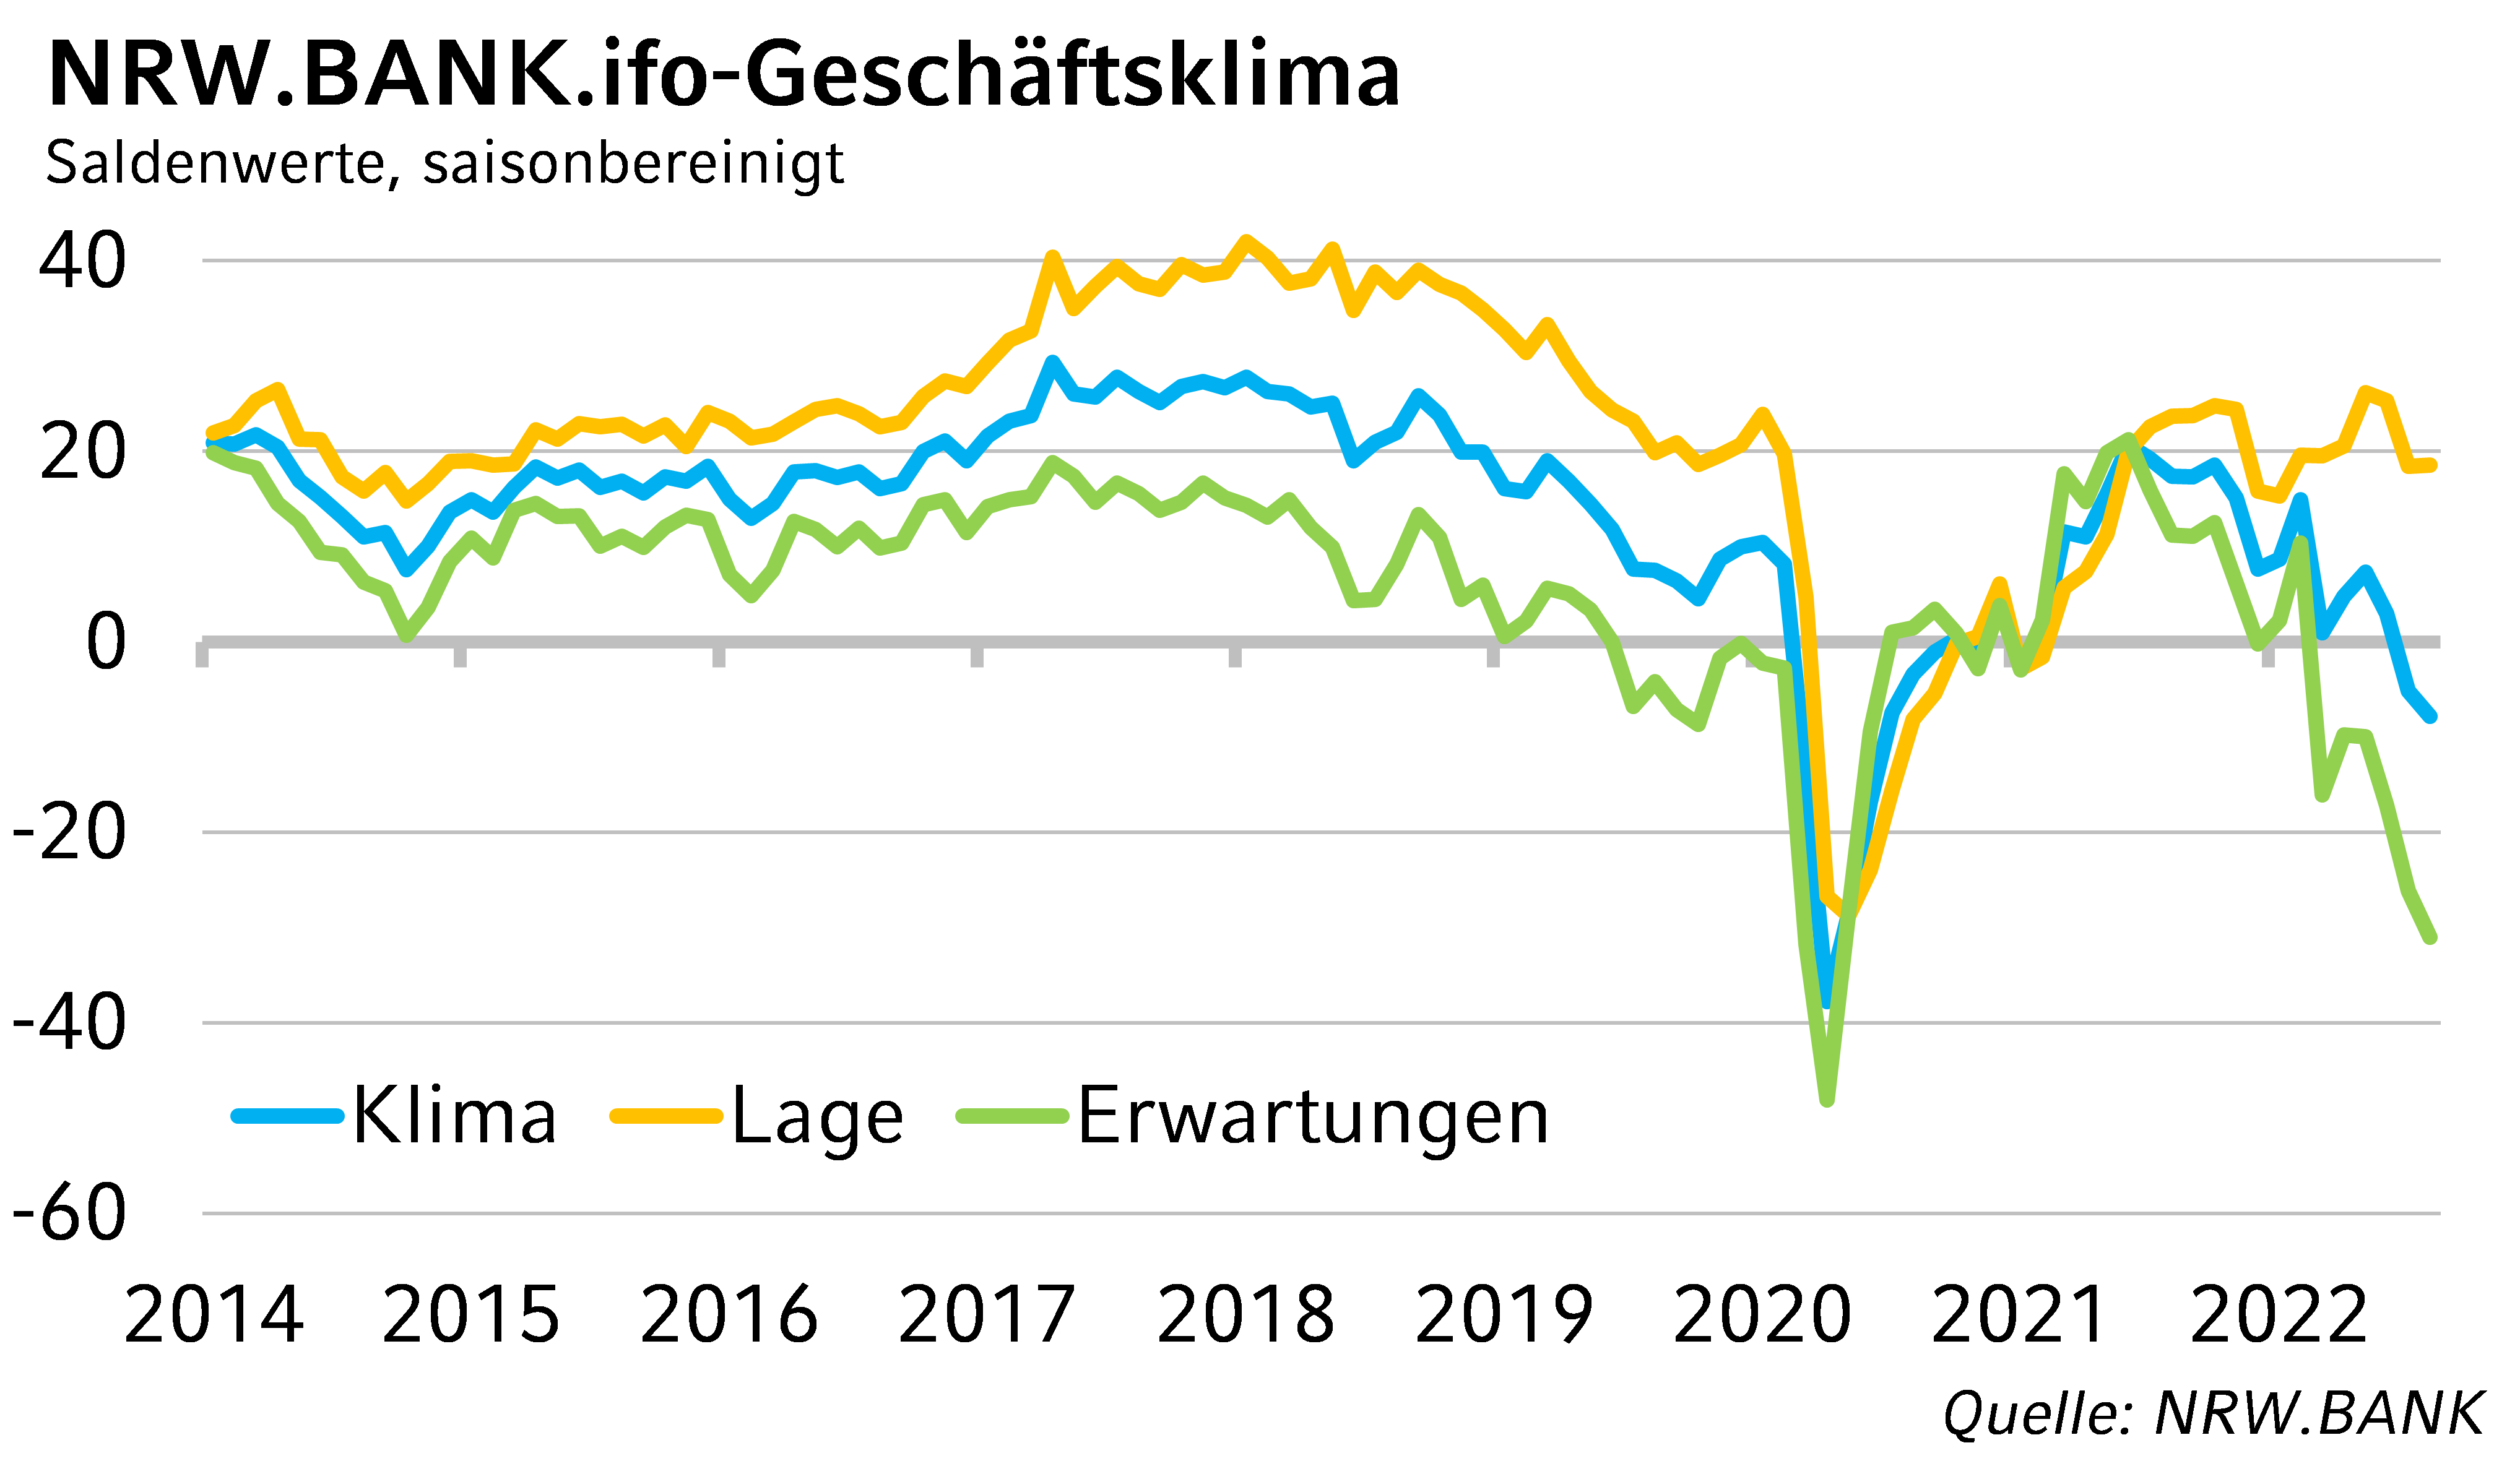 NRW.BANK.ifo-Geschäftsklima August 2022: In Nordrhein-Westfalen droht eine Rezession